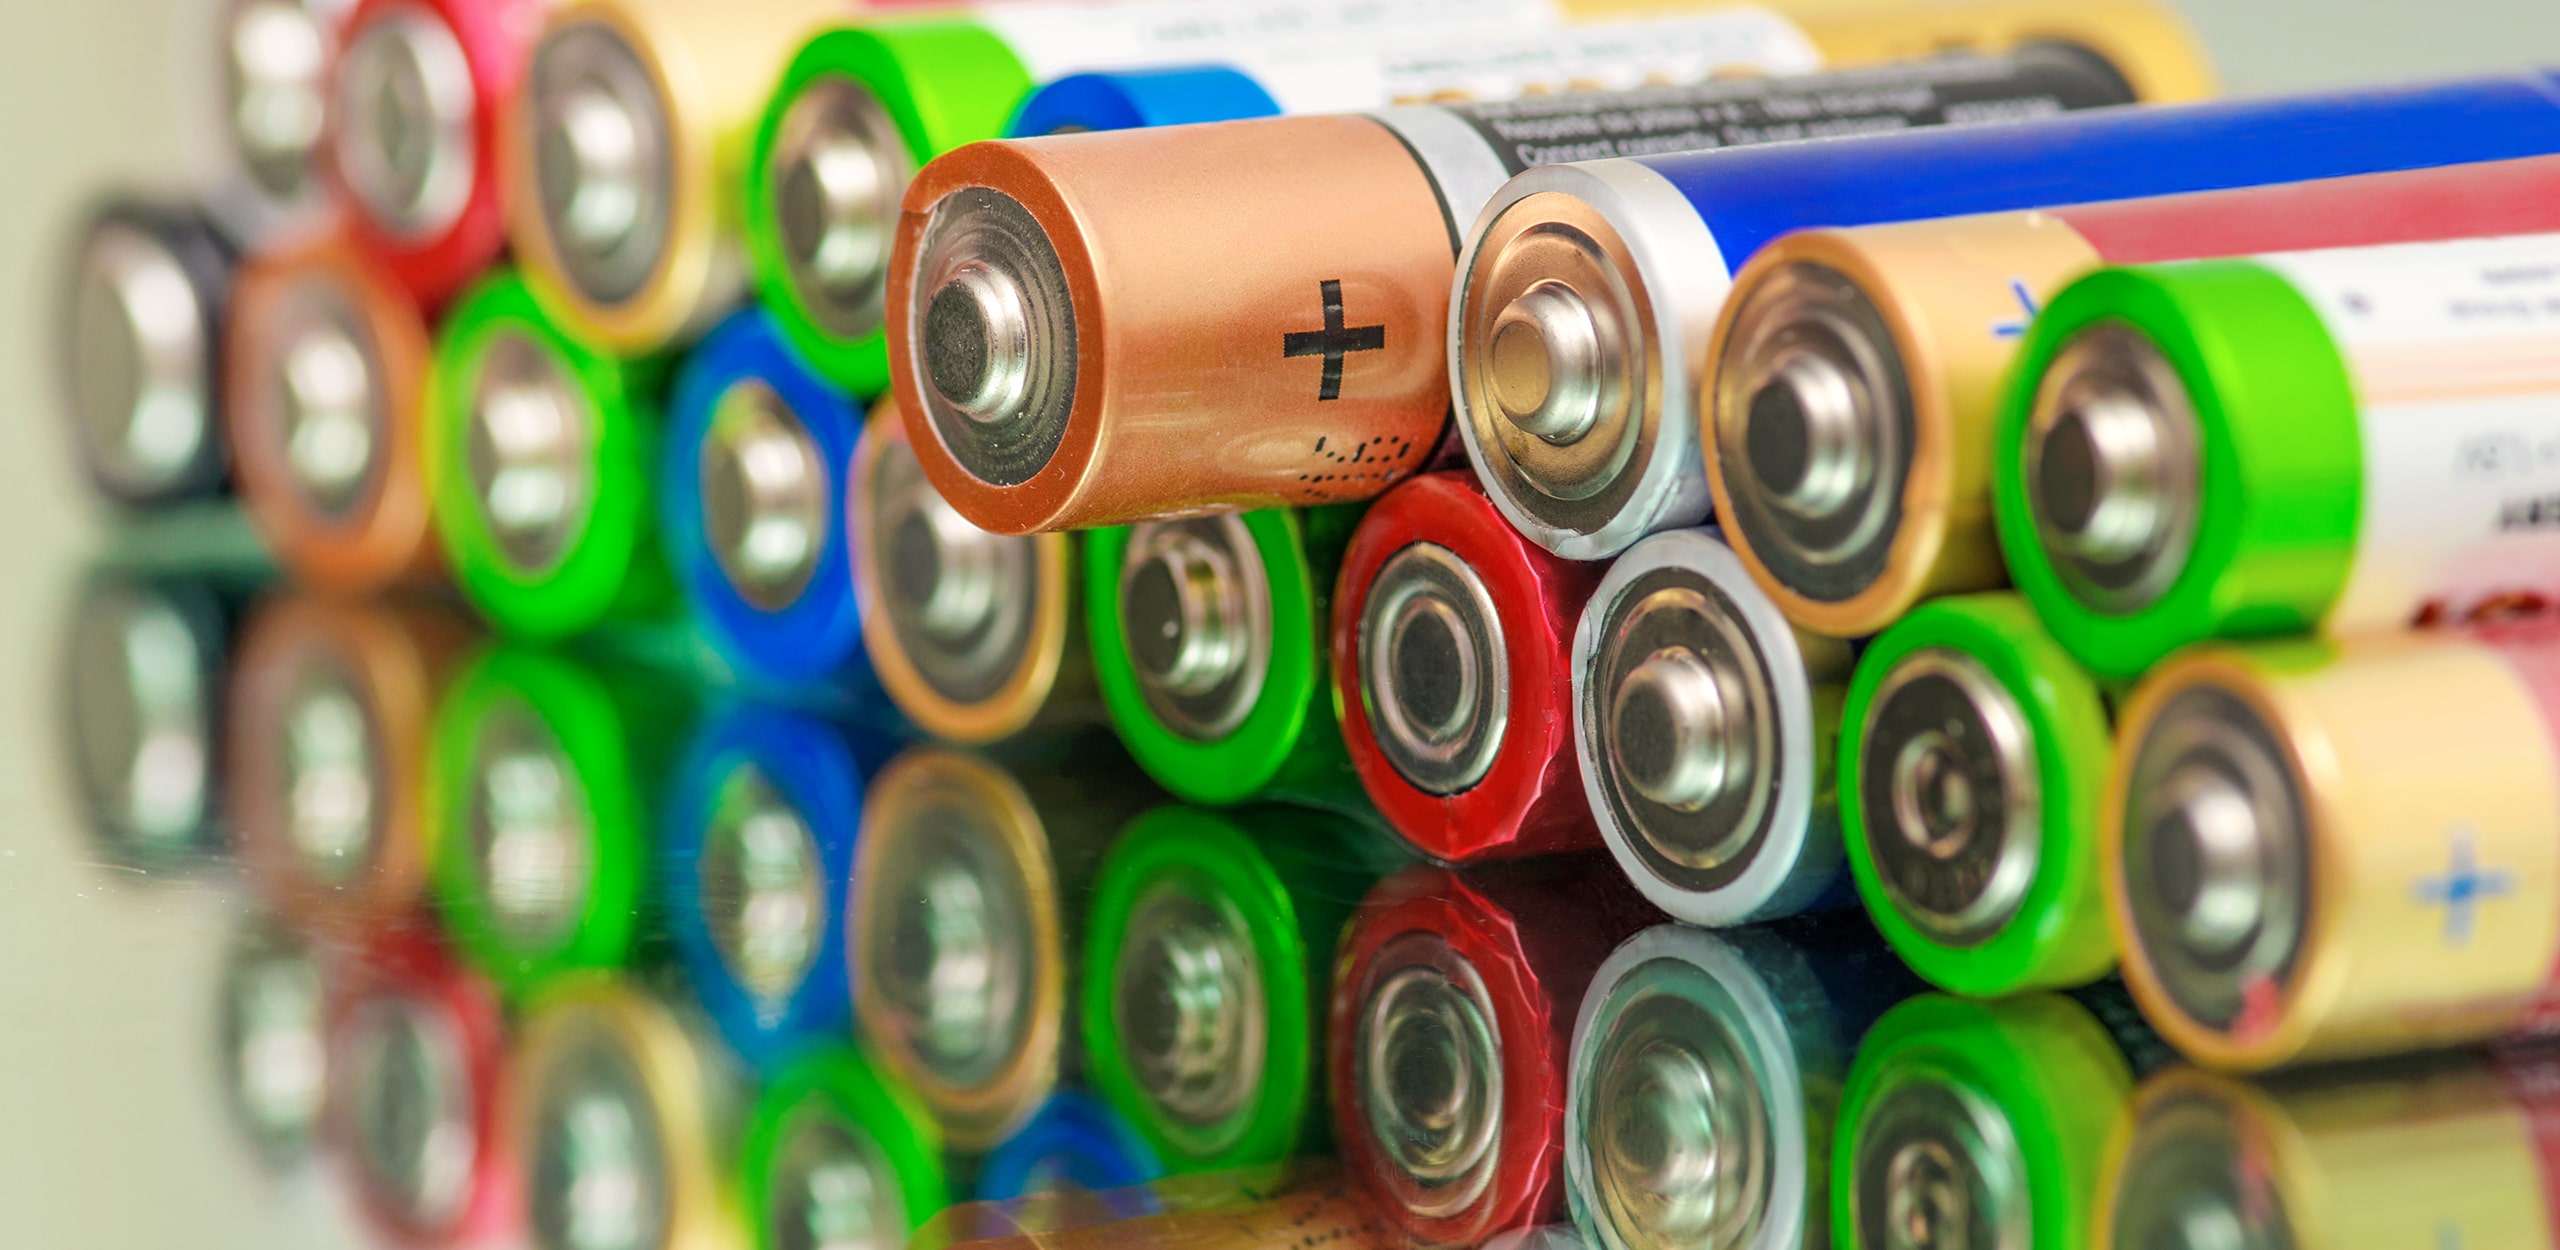 AA Alkaline Battery Alternate, Rapport Inc